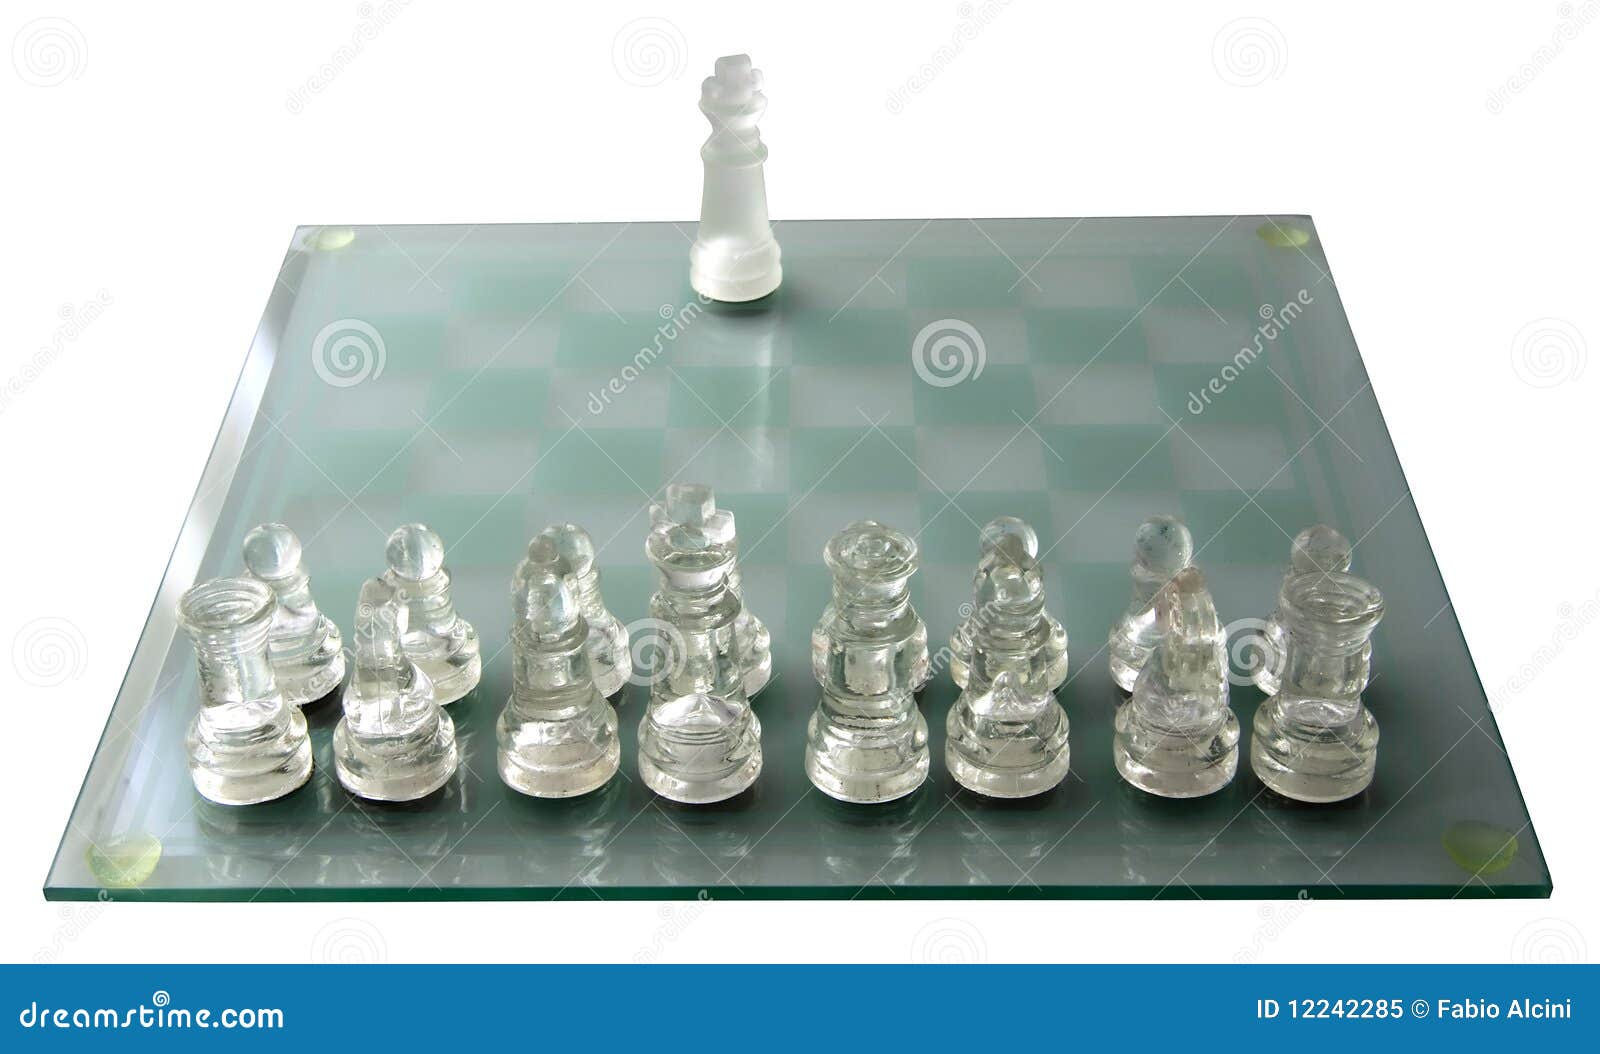 Baixar a última versão do War Chess grátis em Português no CCM - CCM